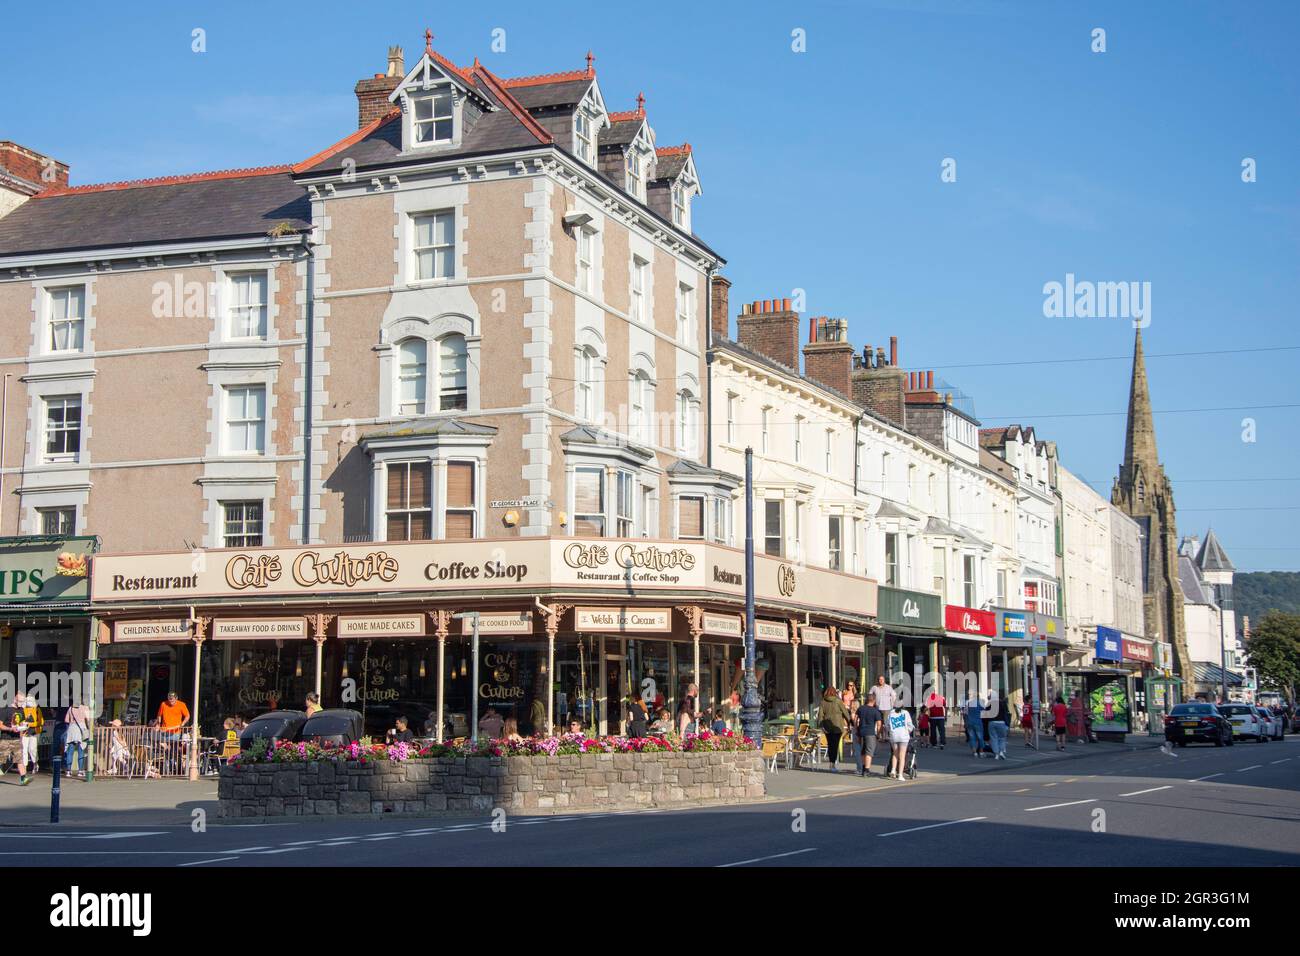 Cafes and shops, Mostyn Street, Llandudno, Conwy County Borough, Wales, United Kingdom Stock Photo